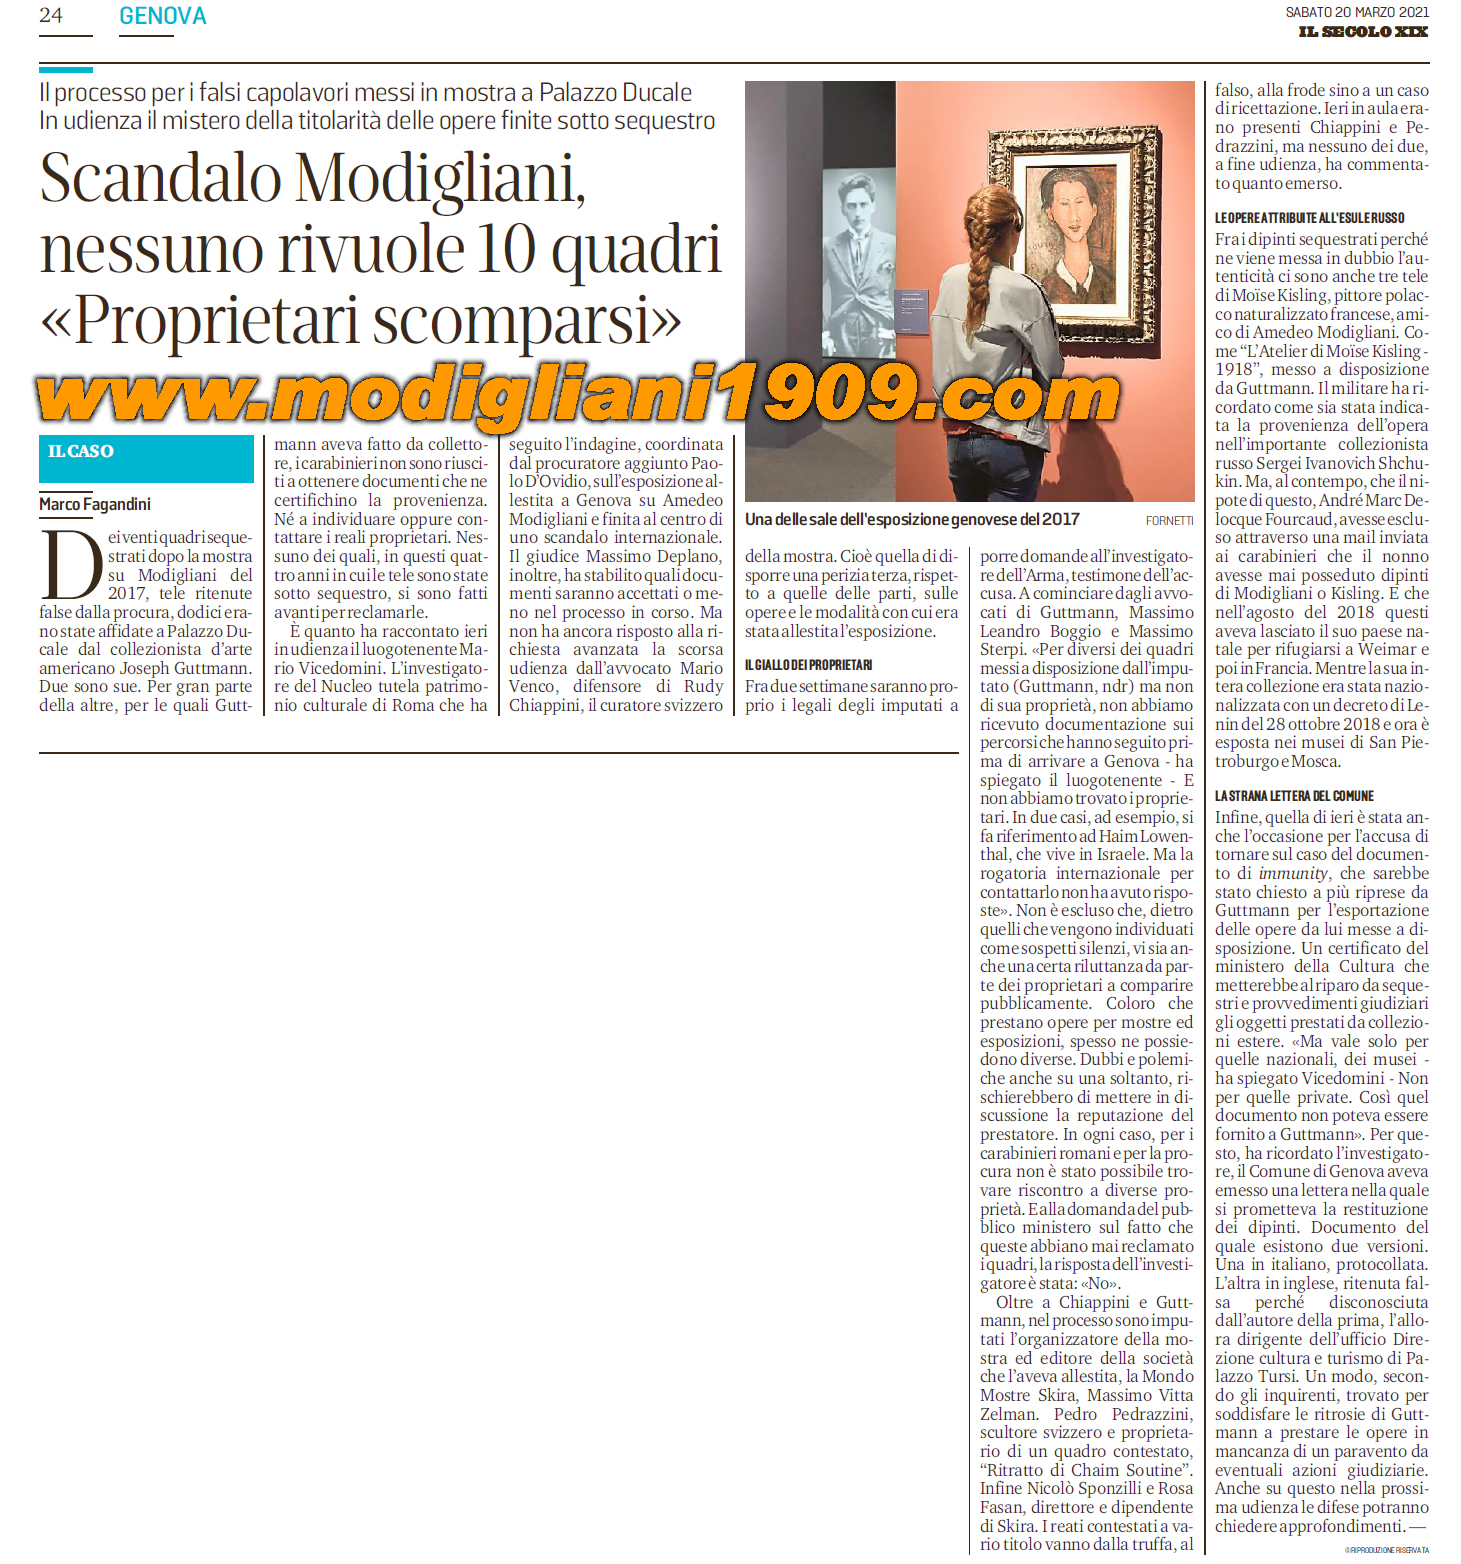 Scandalo Modigliani: nessuno rivuole i 10 quadri. Scomparsi i proprietari